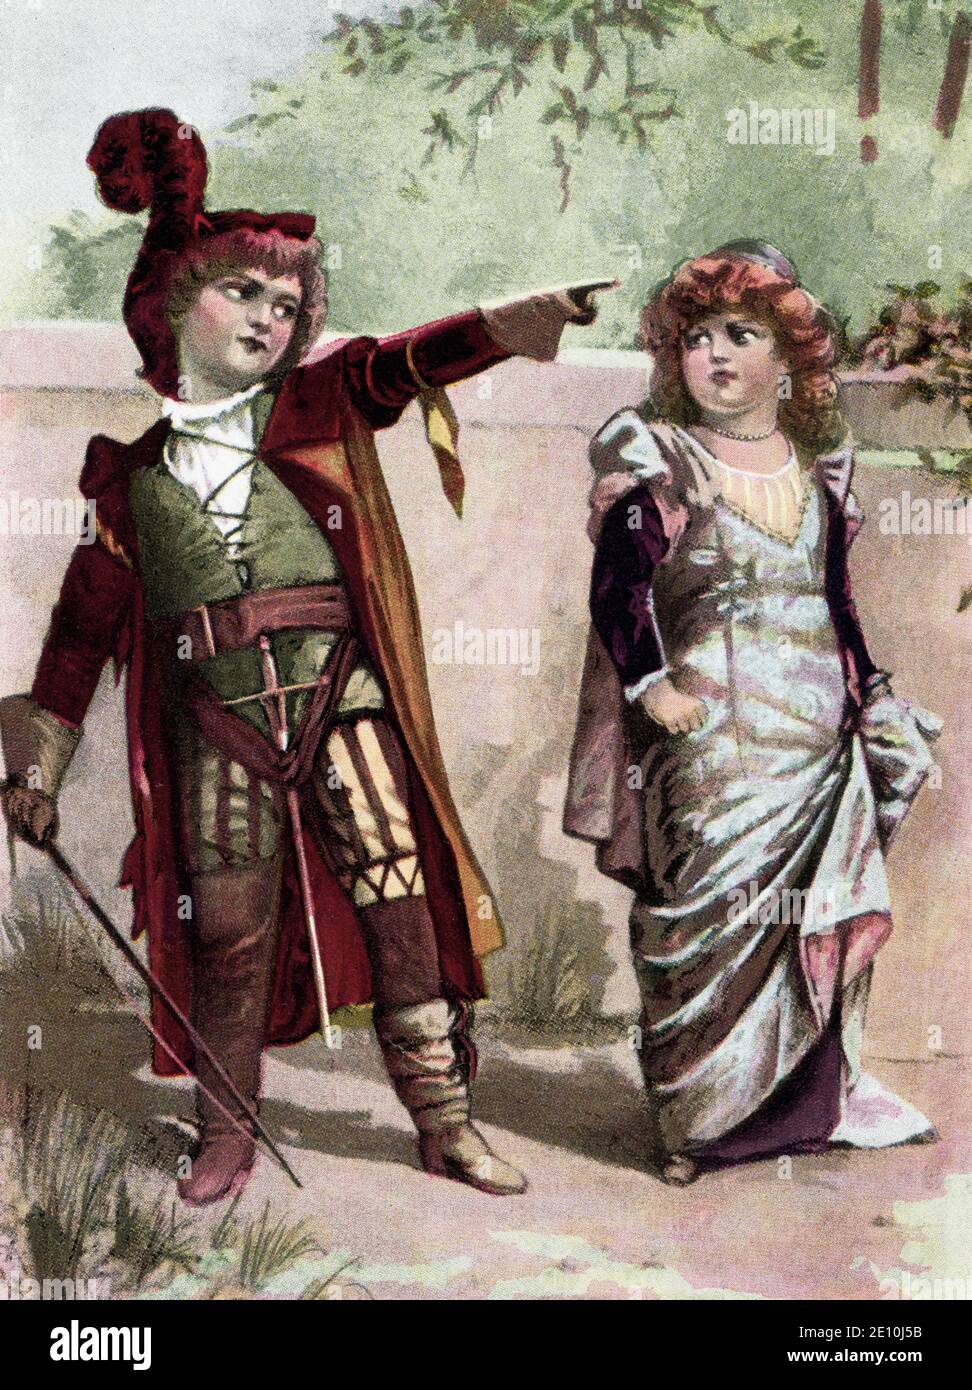 Die „Spitzmaus“ des Stücks Katherine oder Kate ist die Tochter von Baptista Minola, mit dem sie in Padua lebt. Ihre Feindseligkeit gegenüber Freiern beunstet ihren Vater besonders. Doch ihre Wut und Unhöflichkeit verschleiern ihr tiefes Gefühl der Unsicherheit und ihre Eifersucht gegenüber ihrer Schwester Bianca. Sie widersetzt sich ihrem Verehrer Petruchio nicht für immer und unterwirft sich schließlich ihm, trotz ihrer früheren Ablehnung der Ehe. The Taming of the Shrew ist eine Komödie von William Shakespeare, die vermutlich zwischen 1590 und 1592 geschrieben wurde. Das Spiel beginnt mit einem Framing-Gerät, oft beziehen Stockfoto